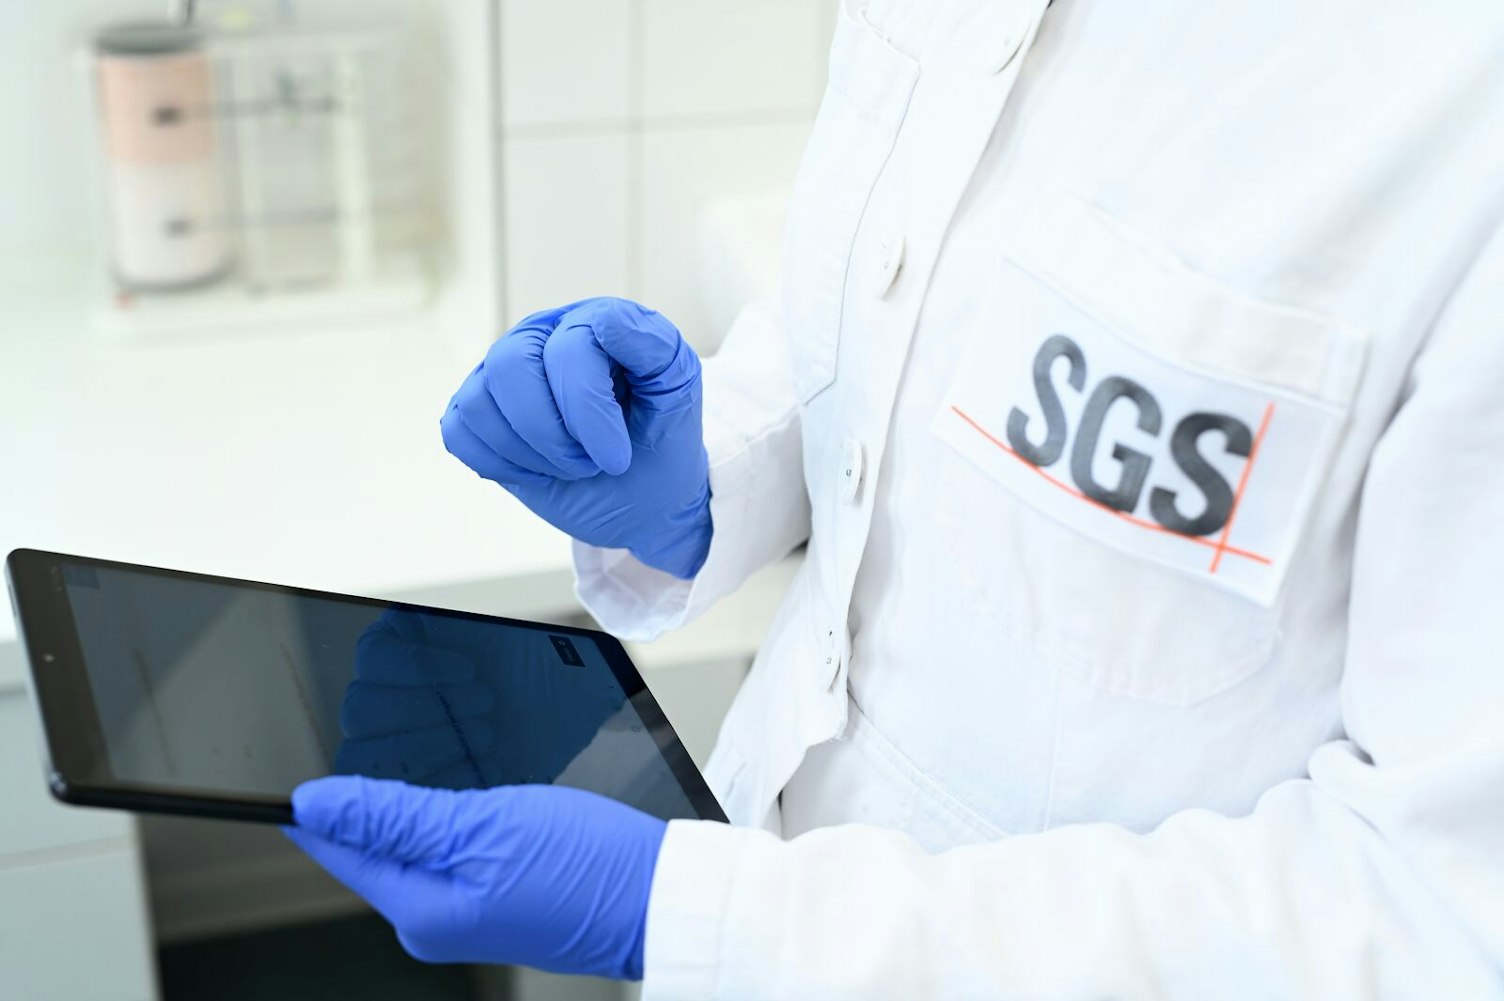 Instituto de SGS Fresenius laboratorio de análisis de cosméticos en hamburgo, Alemania